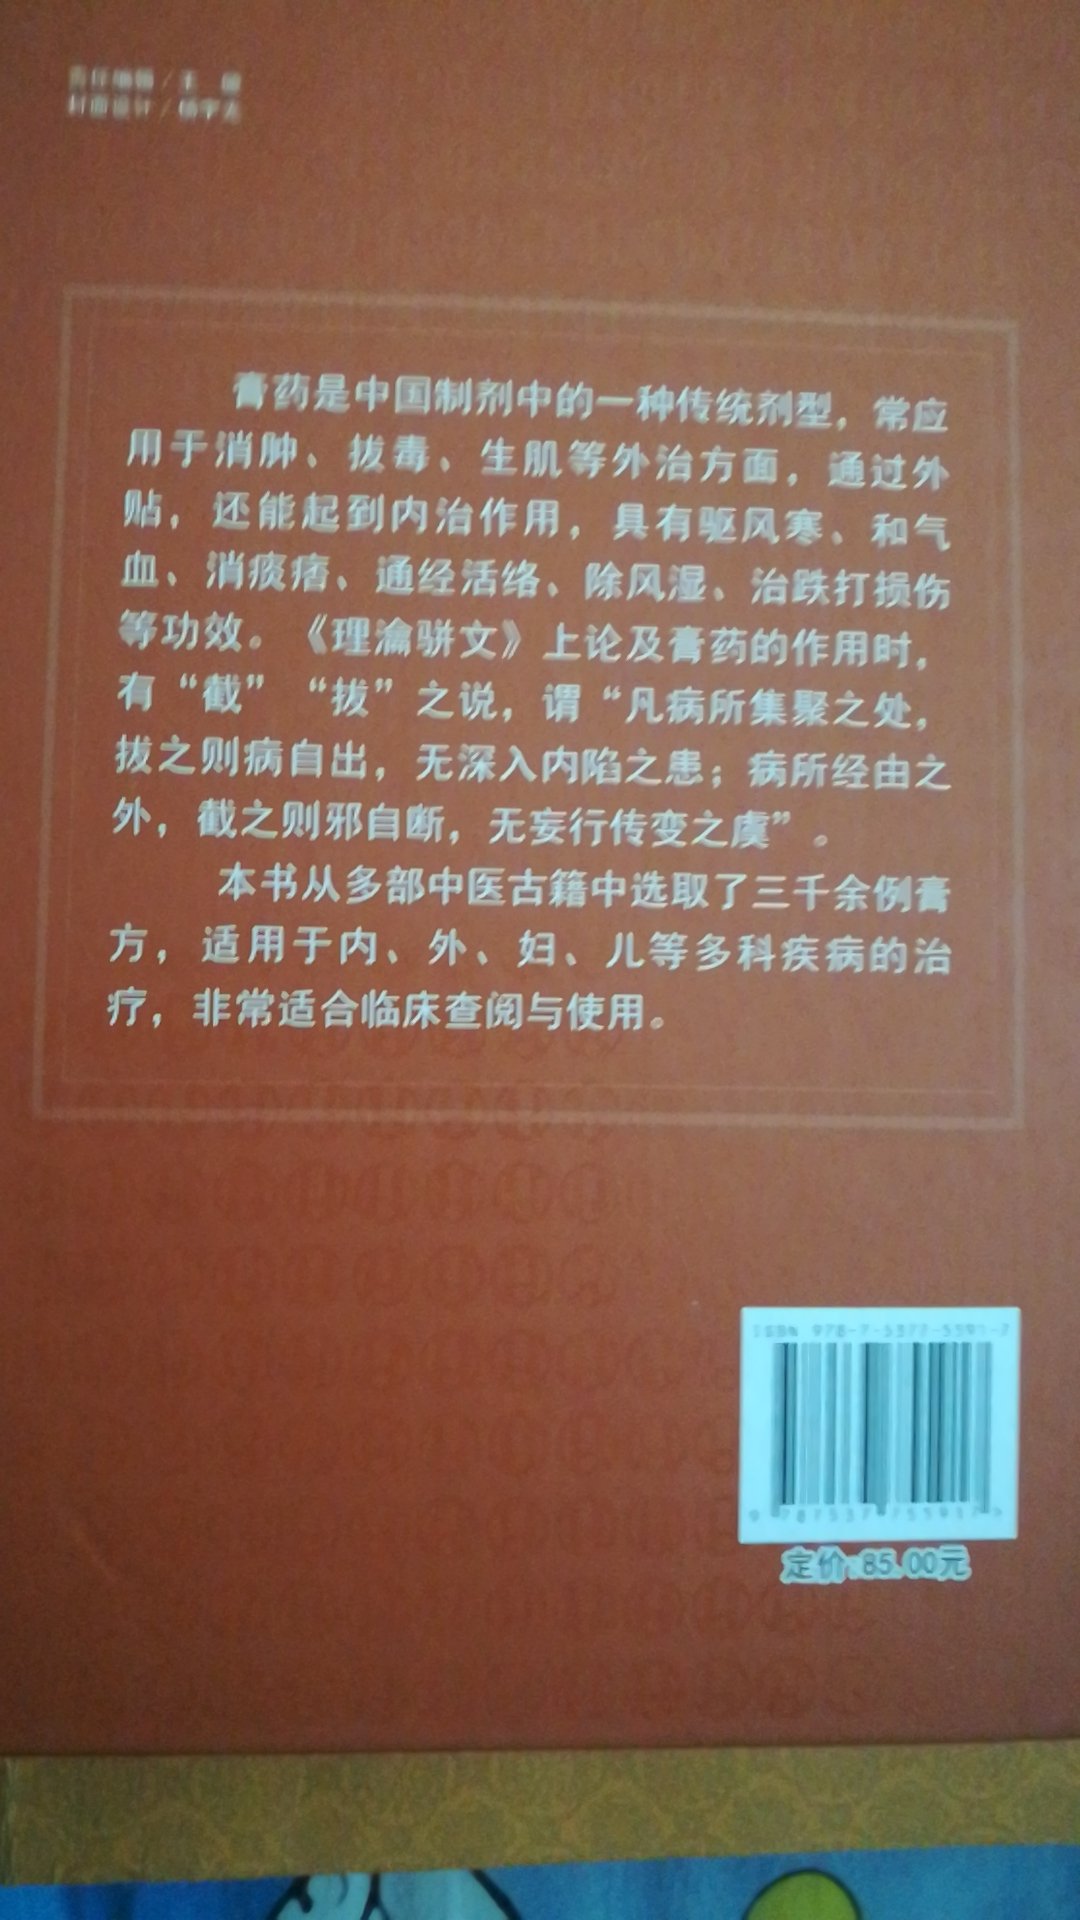 中医膏方辞典，按疾病分类，从诸多医籍中选录了经典膏药方，印装精美，收藏起来了。